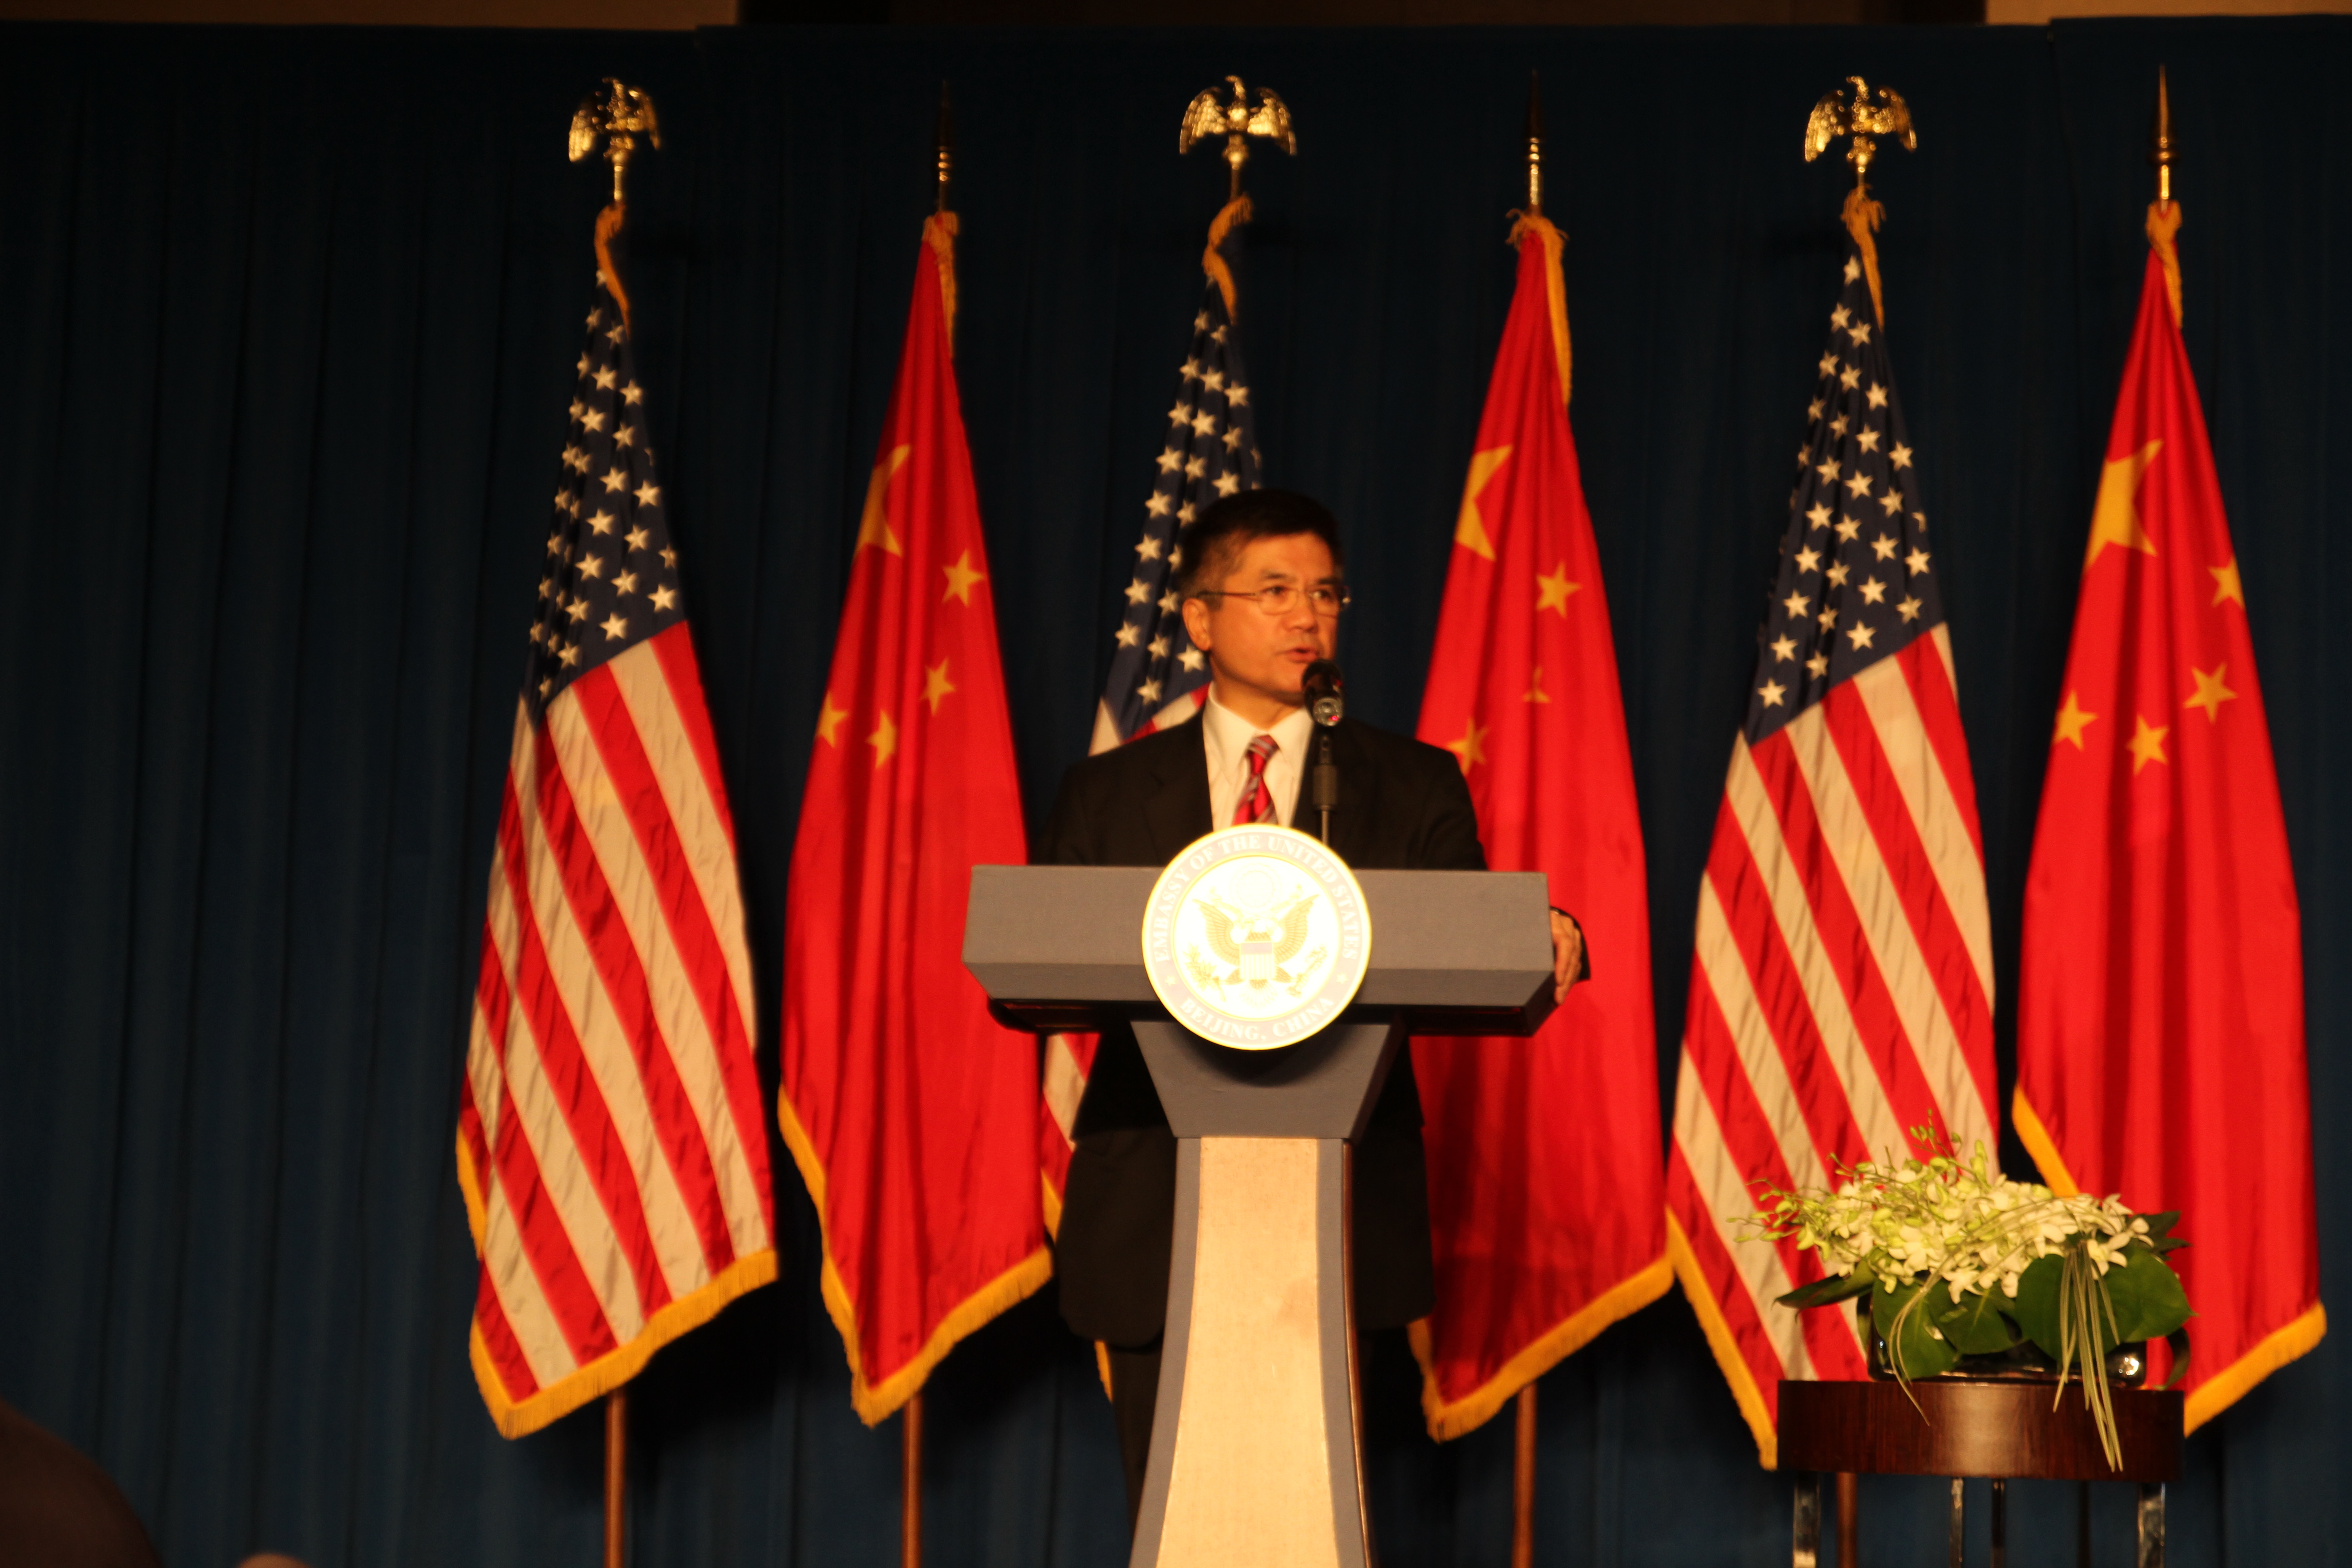 骆家辉畅谈中美经济问题 欢迎更繁荣开放的中国